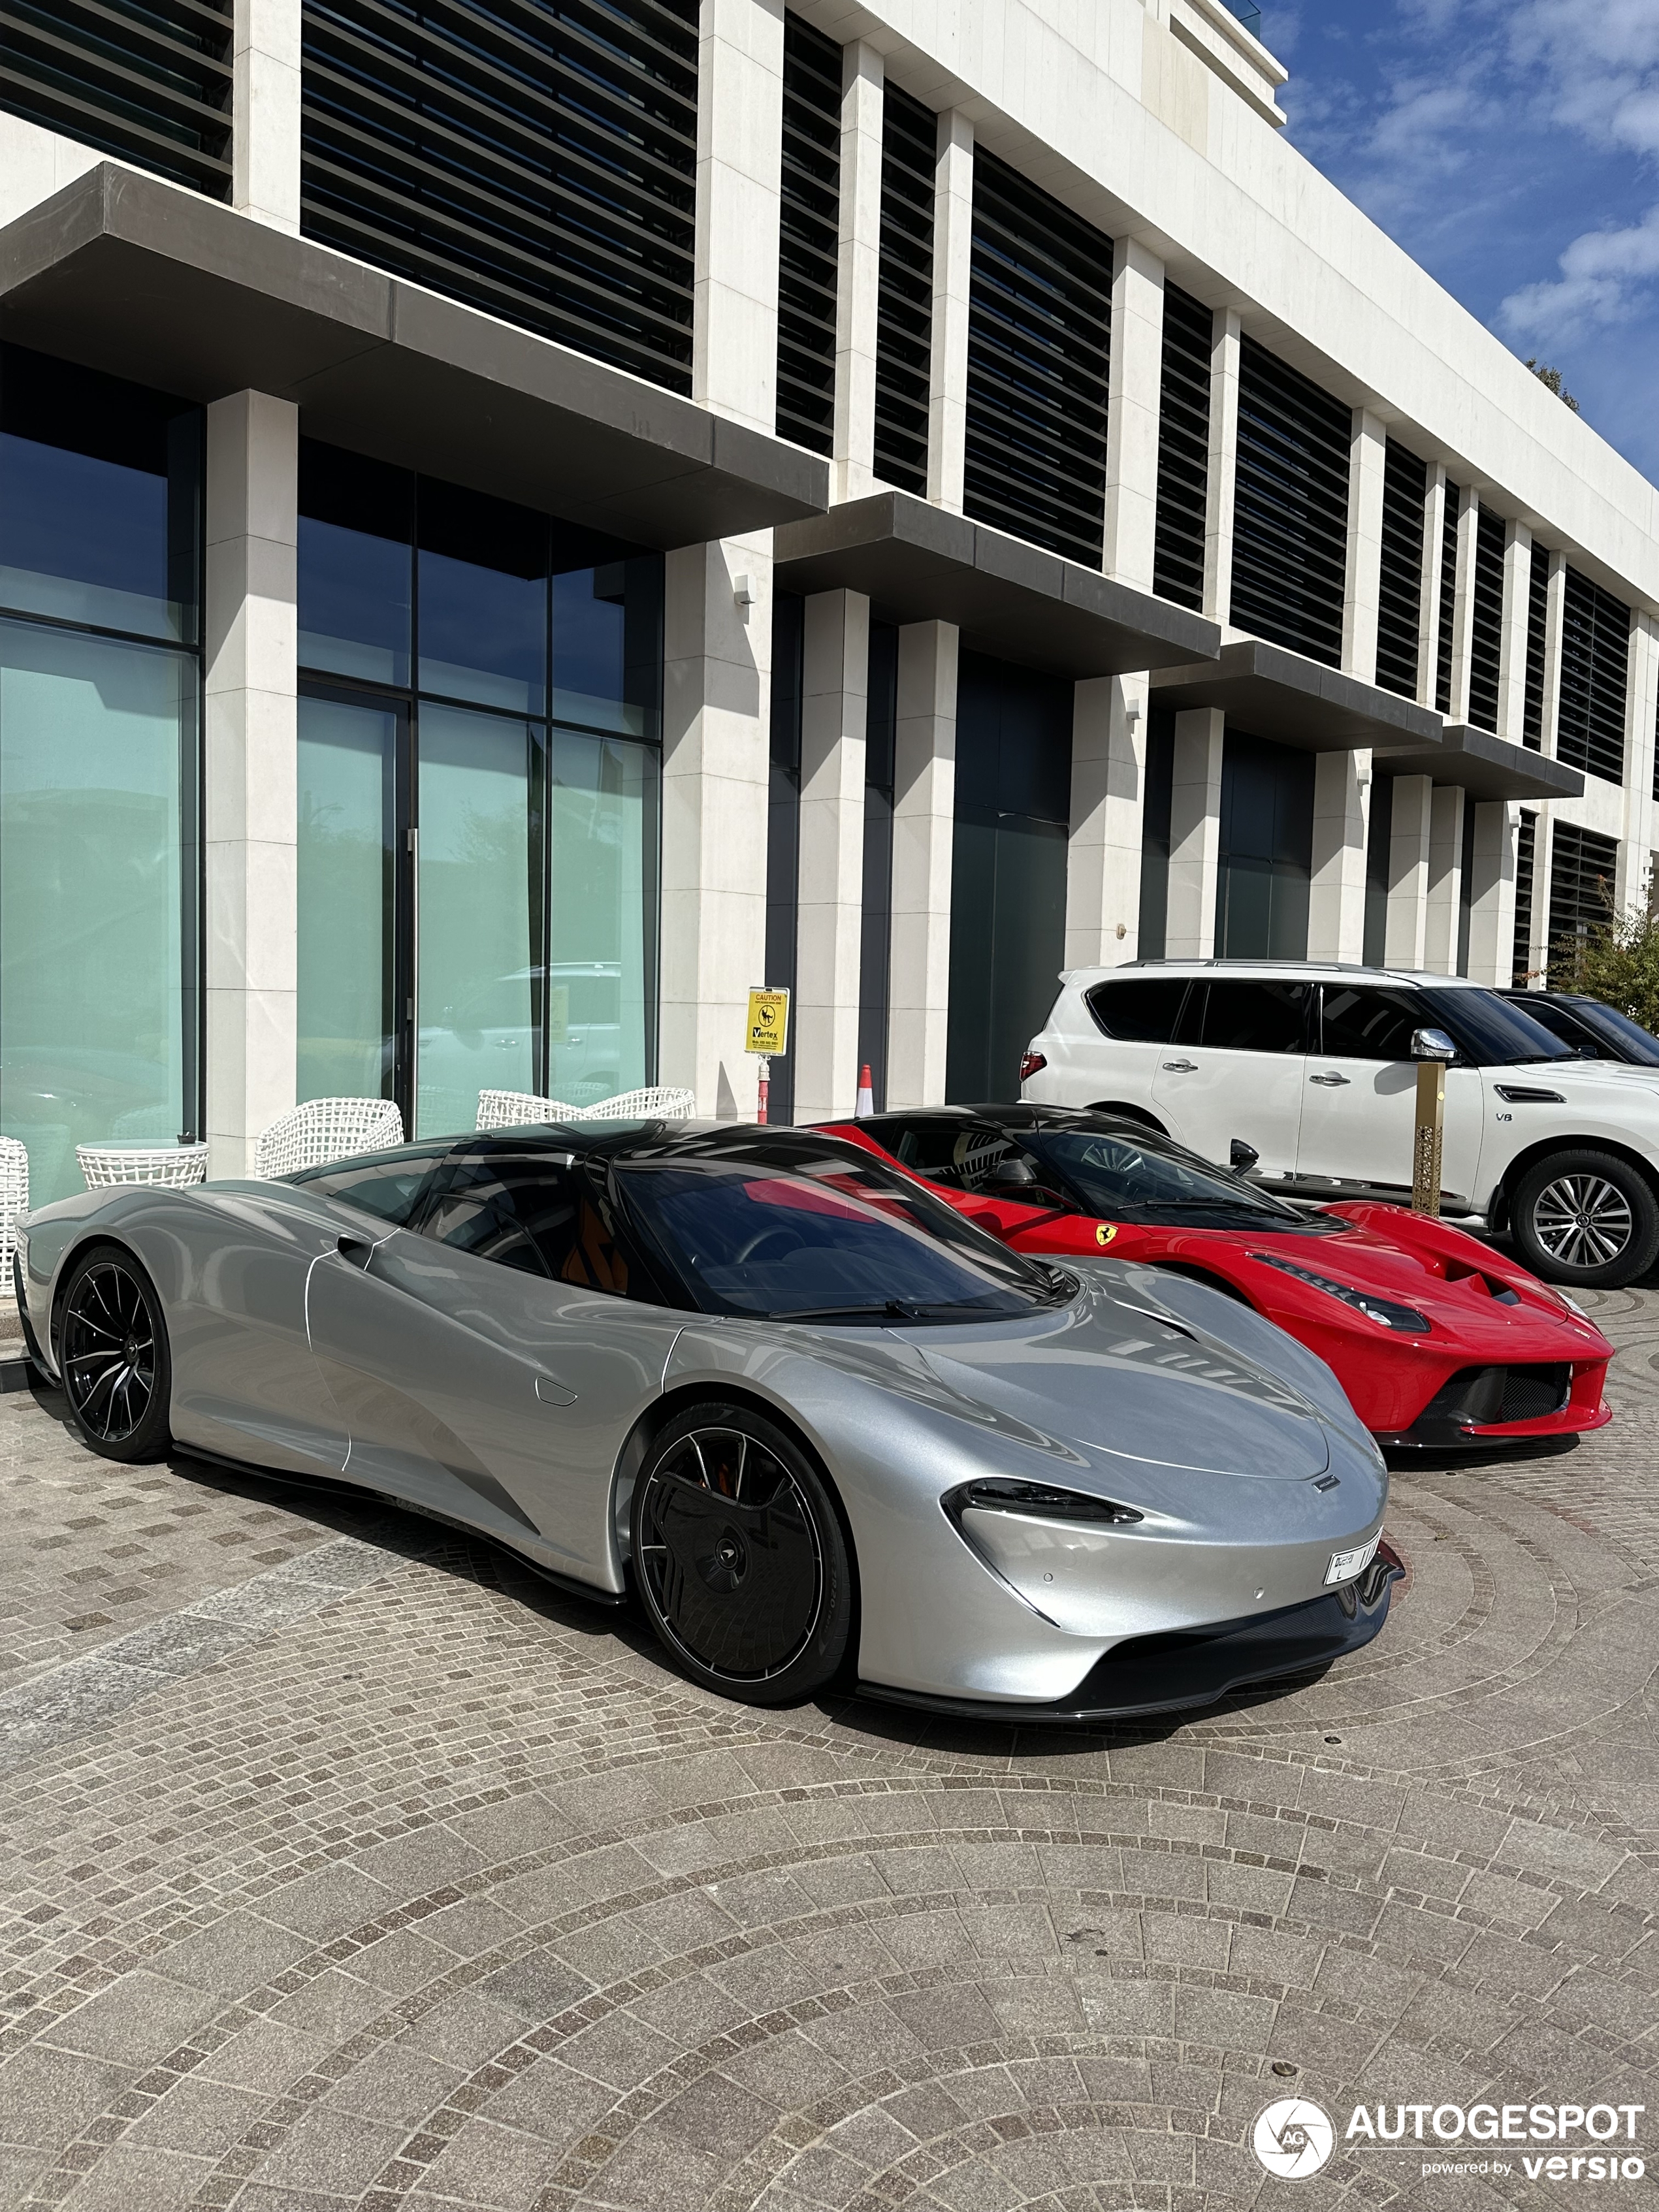 Der Silberne Speedtail erscheint erneut in Dubai